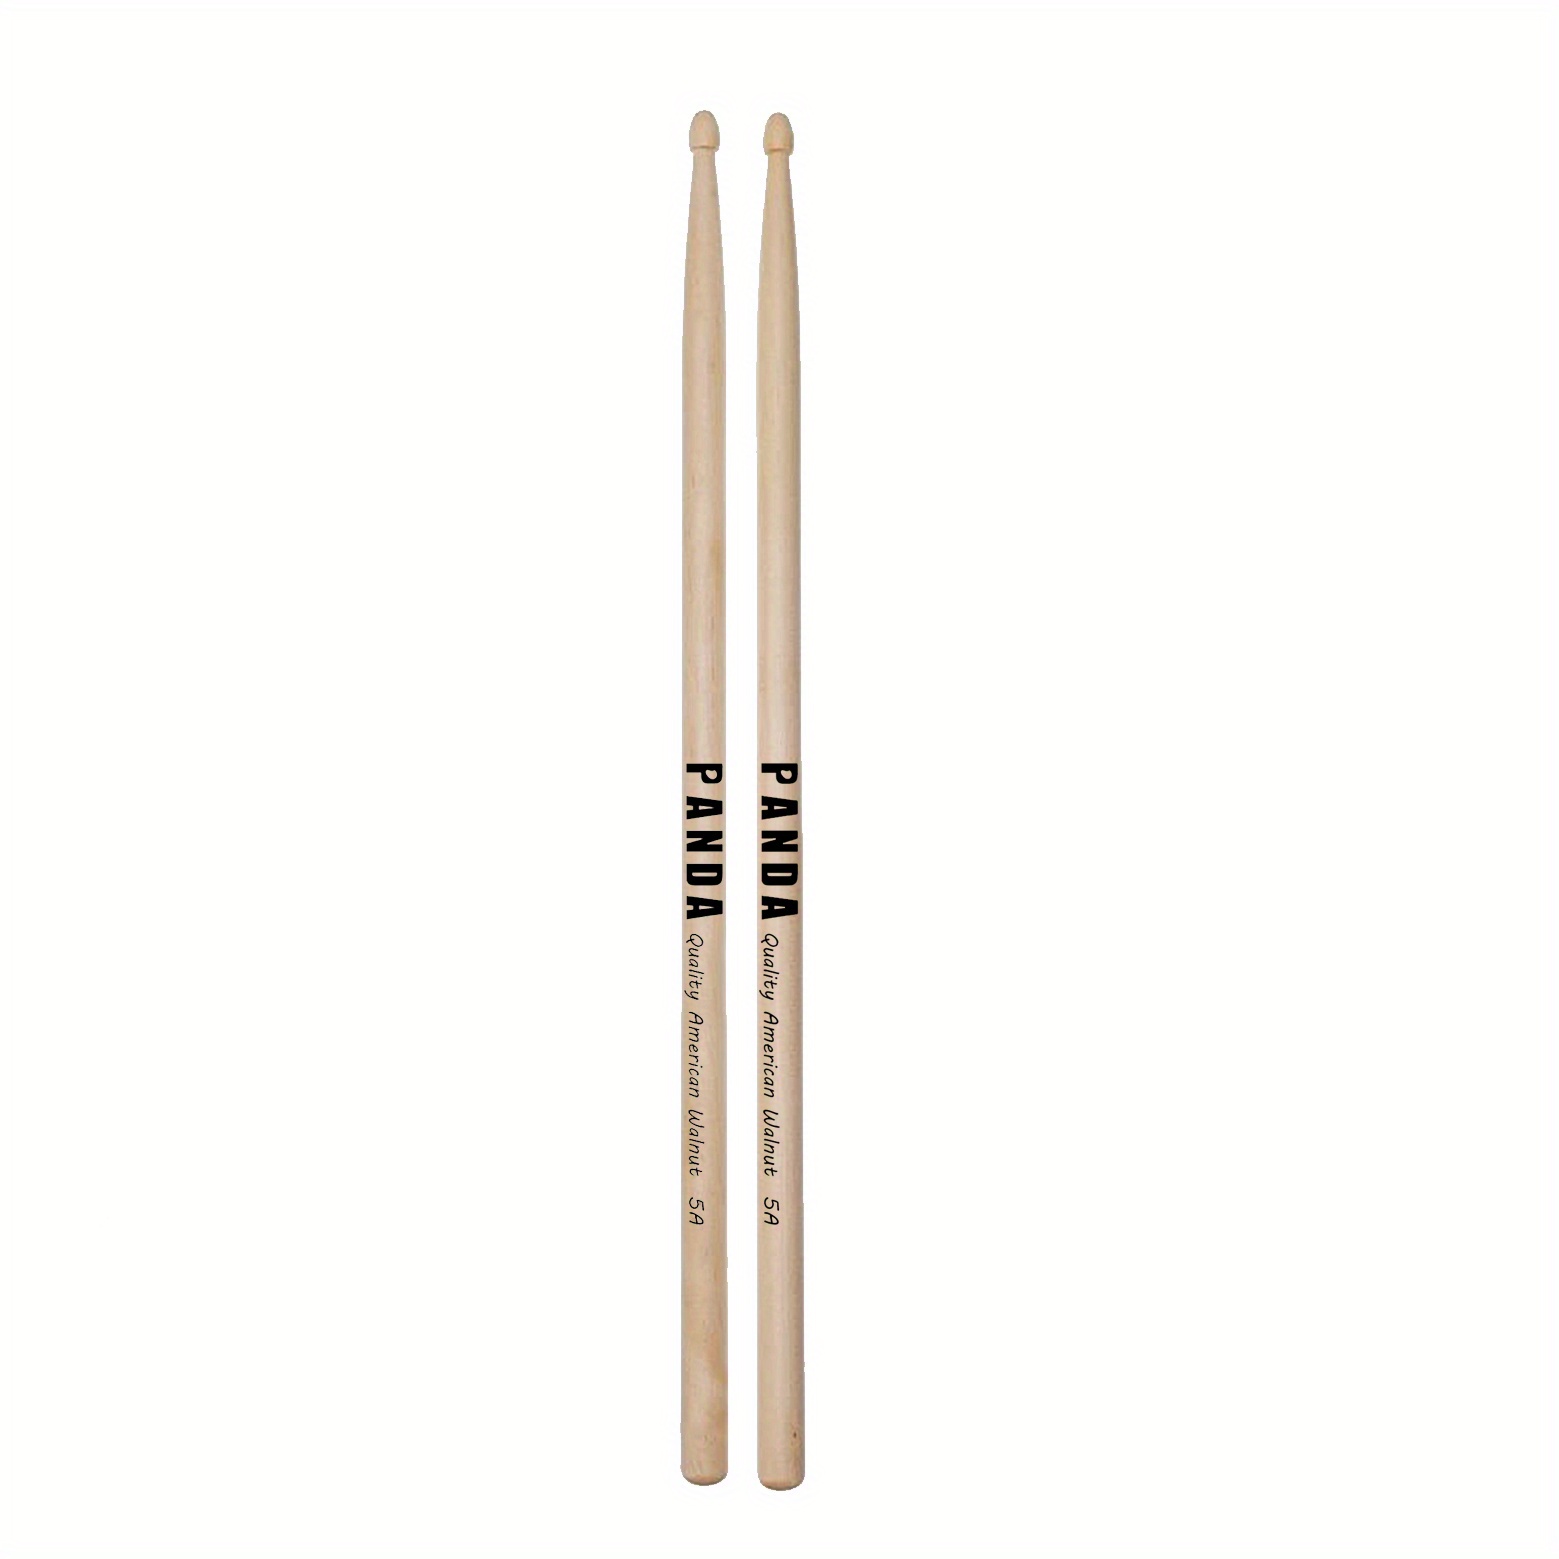 Panda Walnut Drum Sticks 5a Beginners Wood Drumsticks - Temu